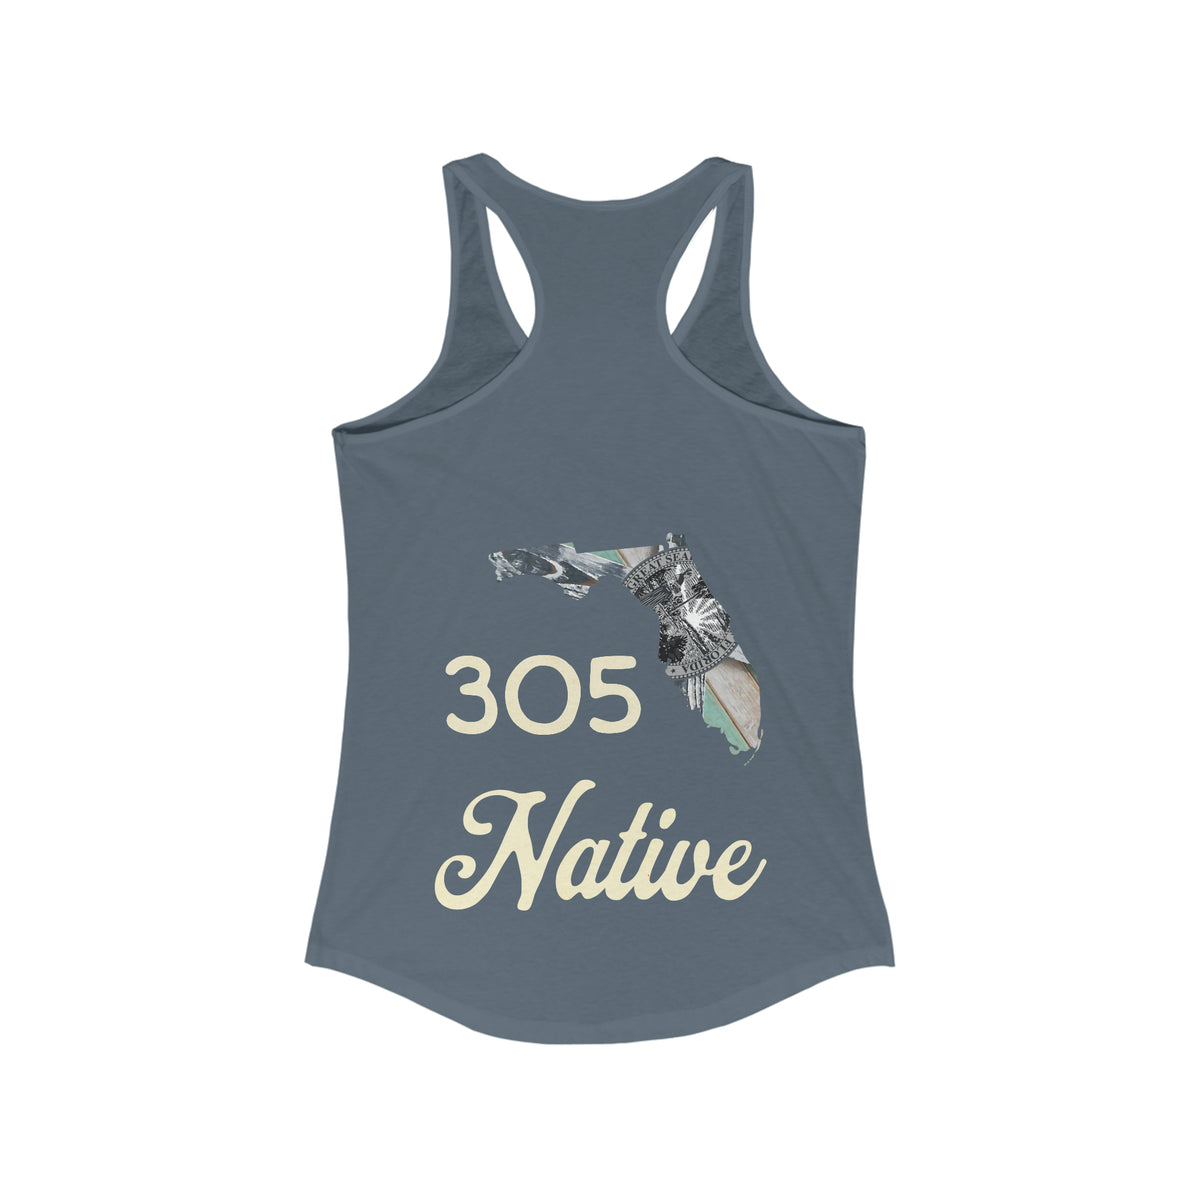 305 Native Women's Lightweight Tank